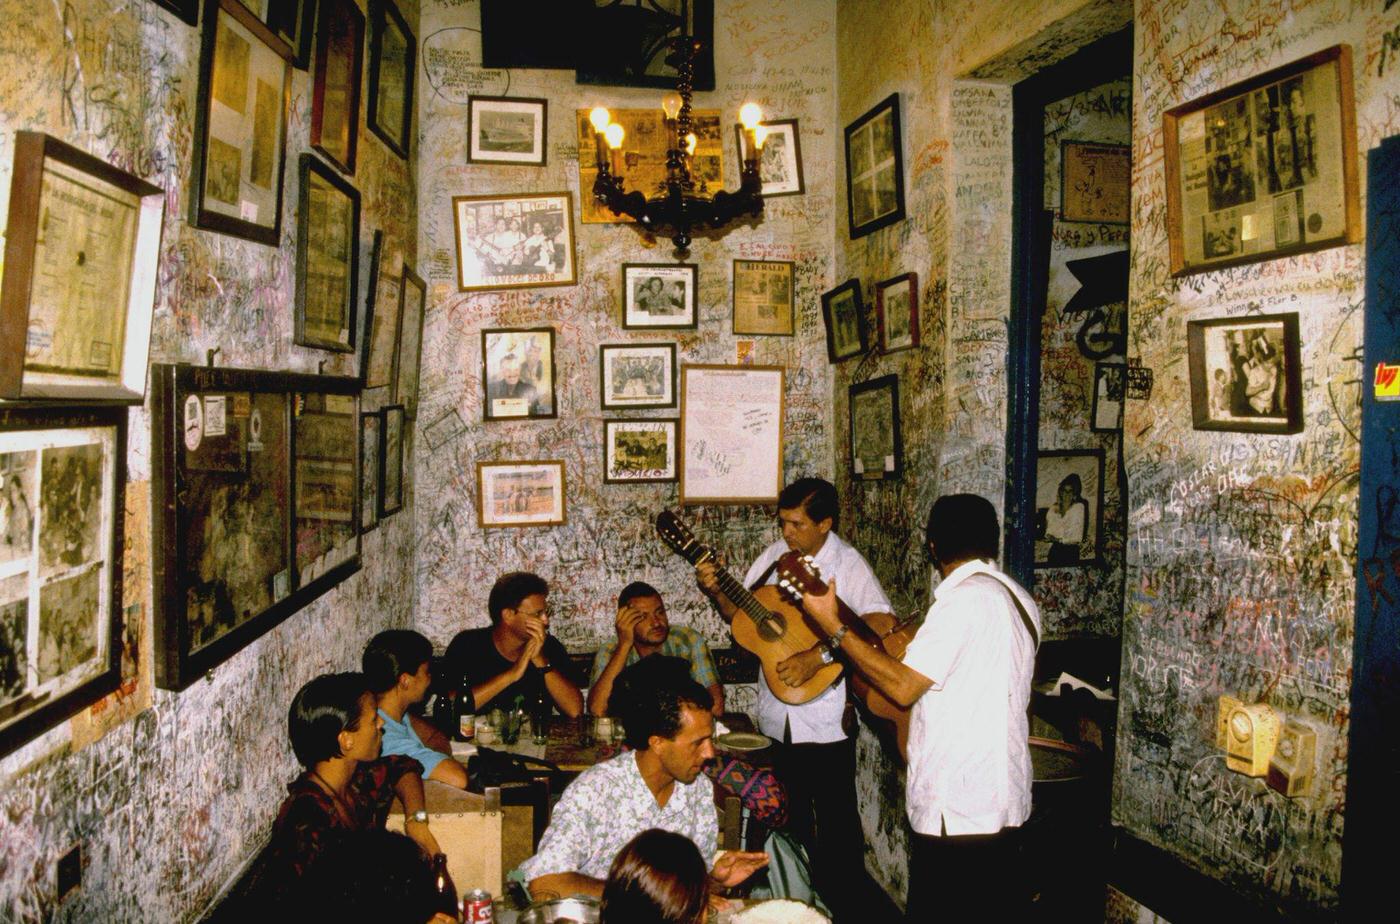 Two Cuban musicians playing guitar at the bar restaurant La Bodeguita del Medio in Havana, Cuba, 1990.